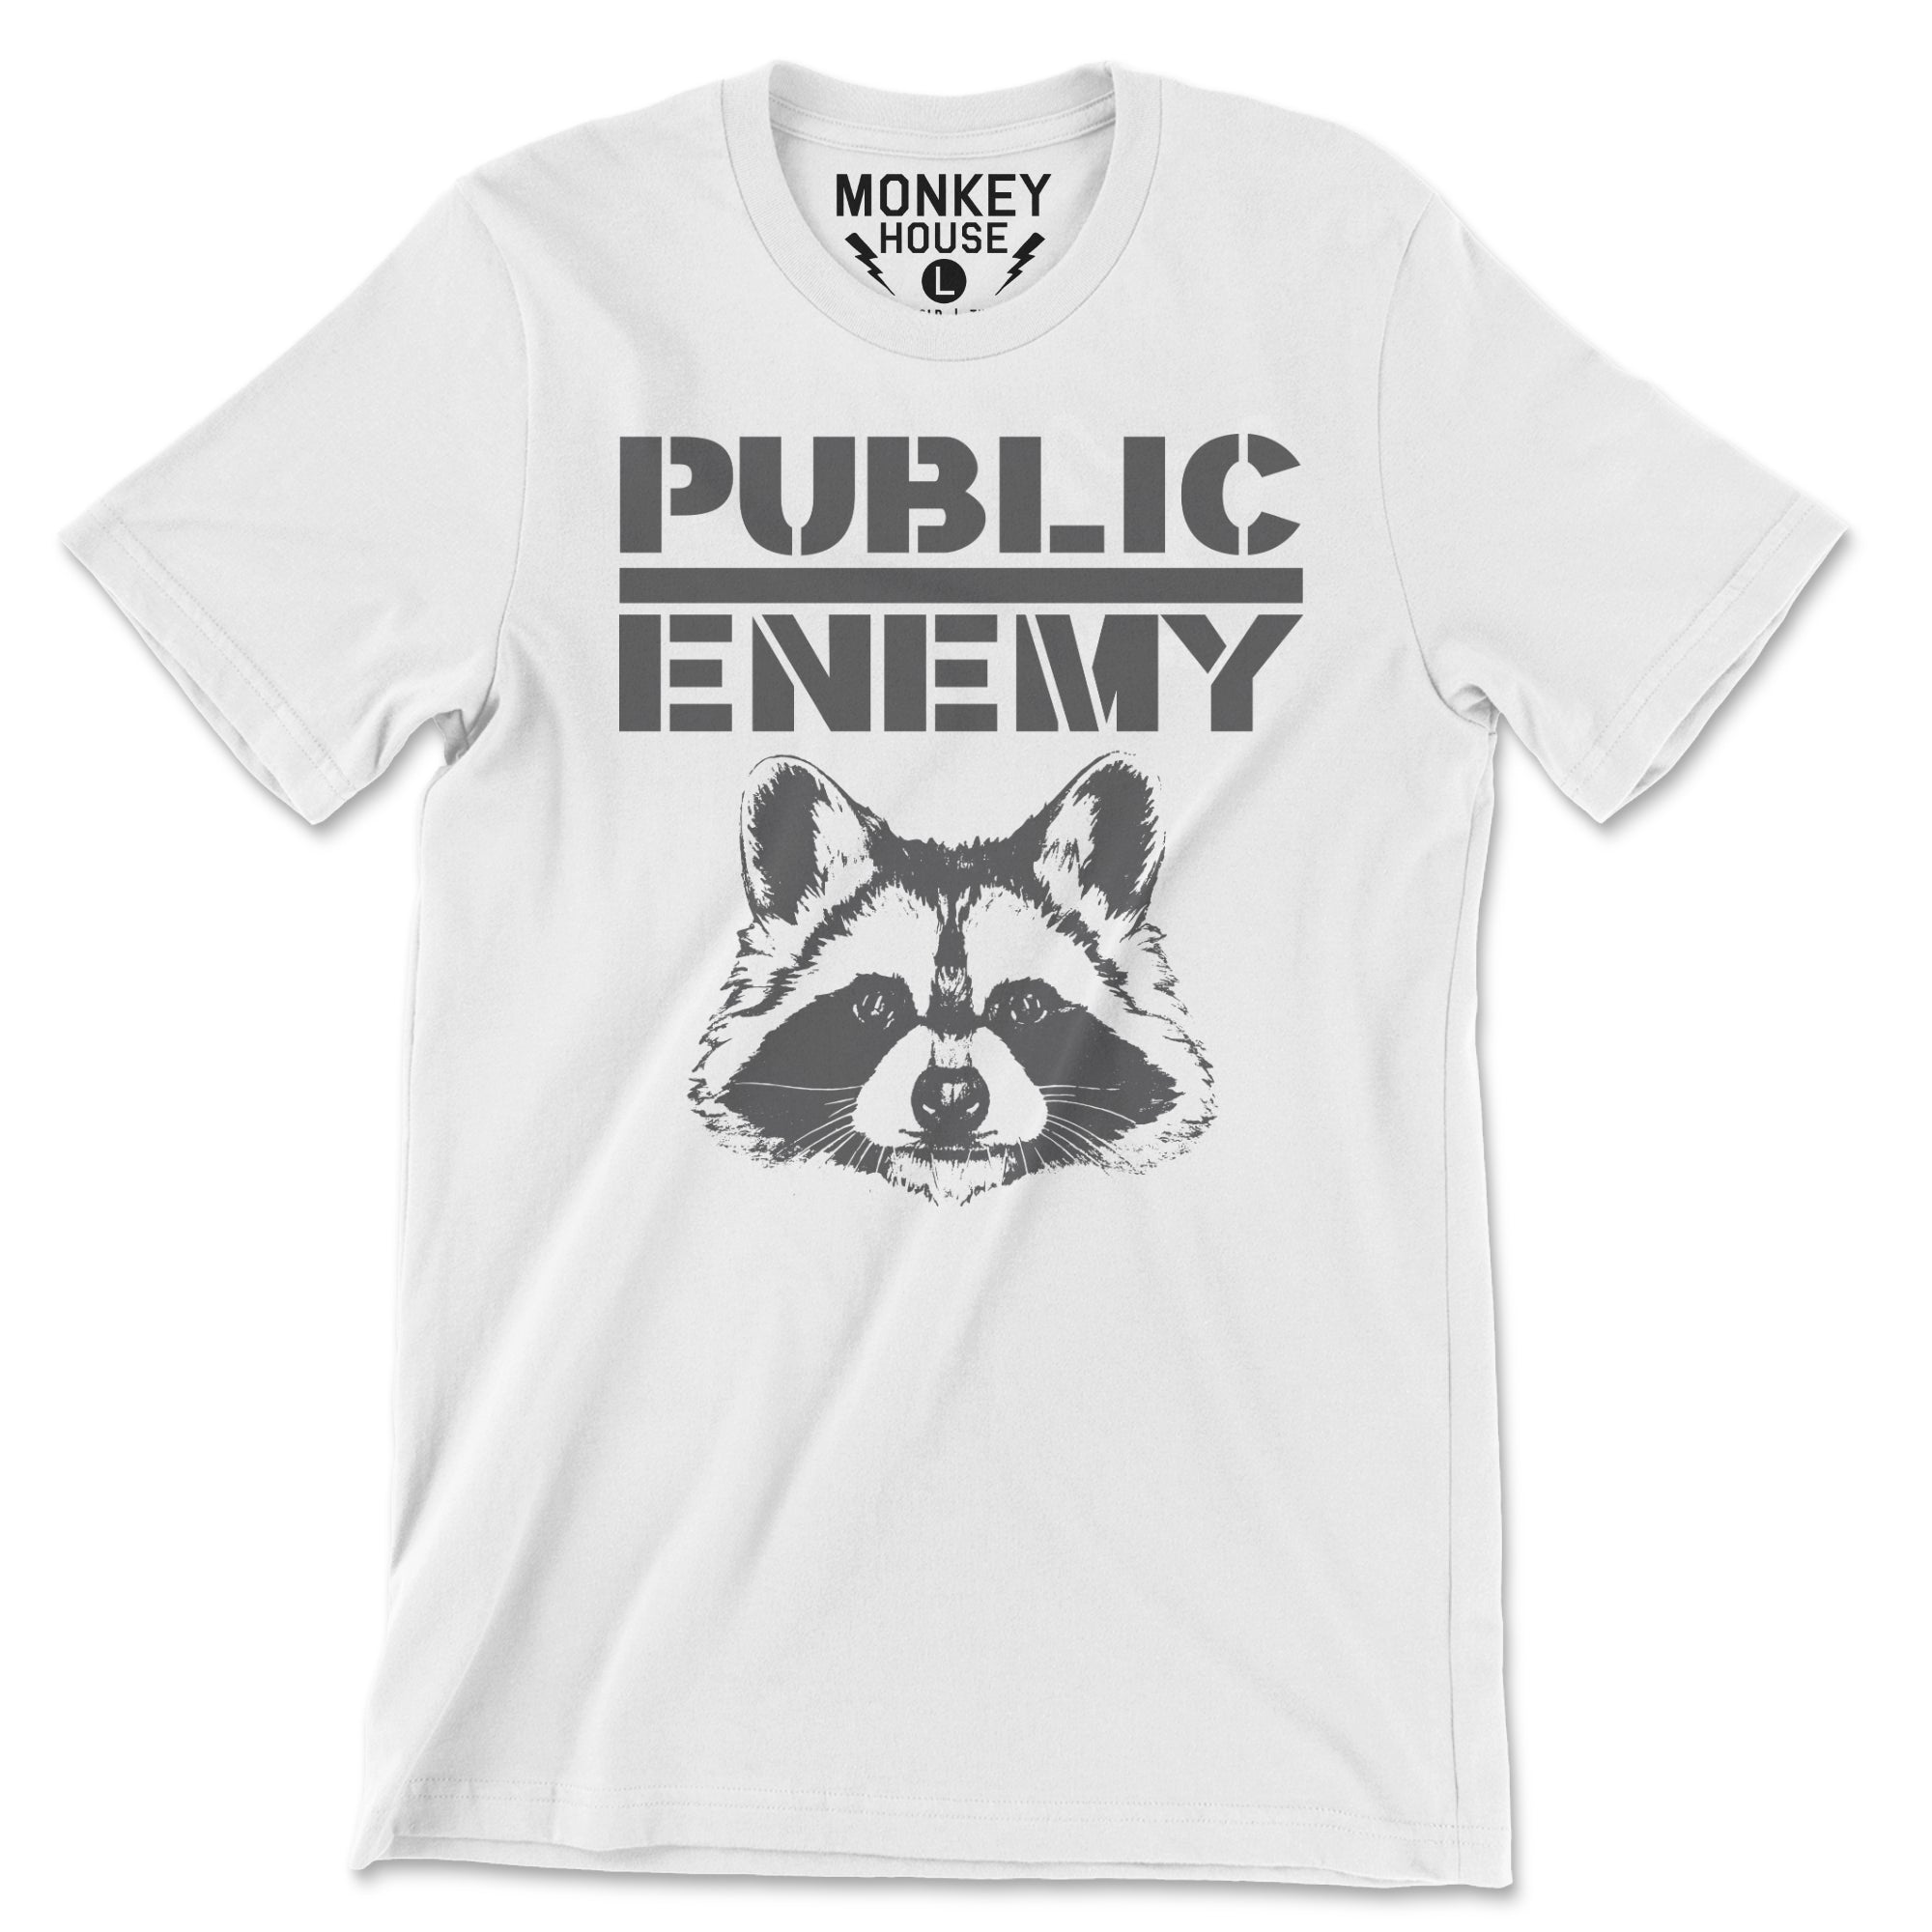 Public Enemy Shirt